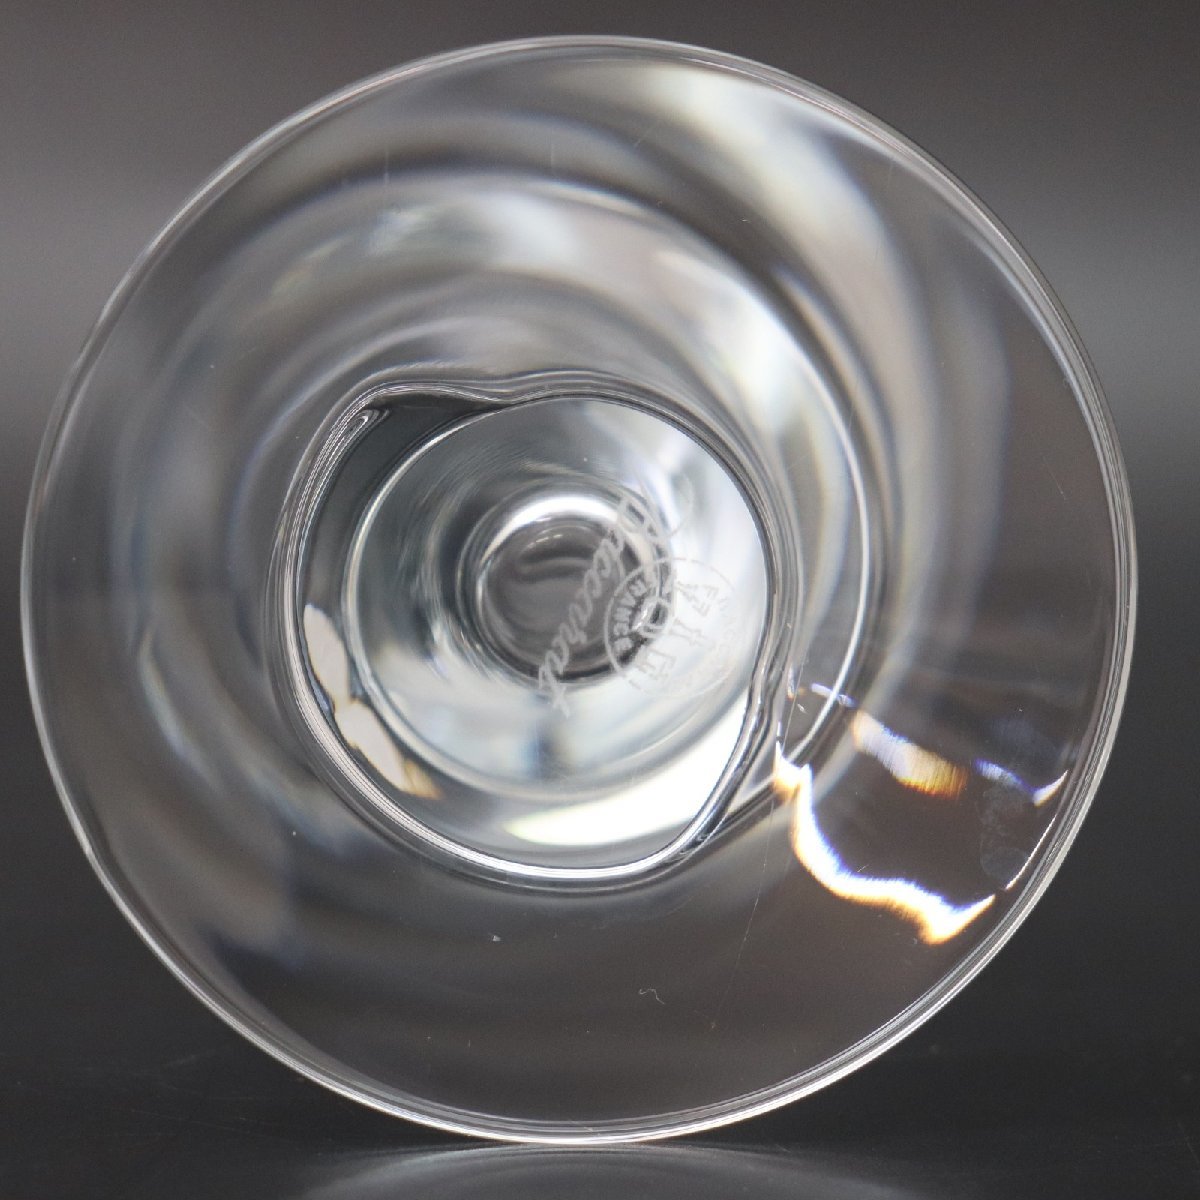 IT7JTOGB9IP6 即決 本物 Baccarat バカラ スパイラル クリスタル 花瓶 フラワーベース ガラス ブランド食器_画像3